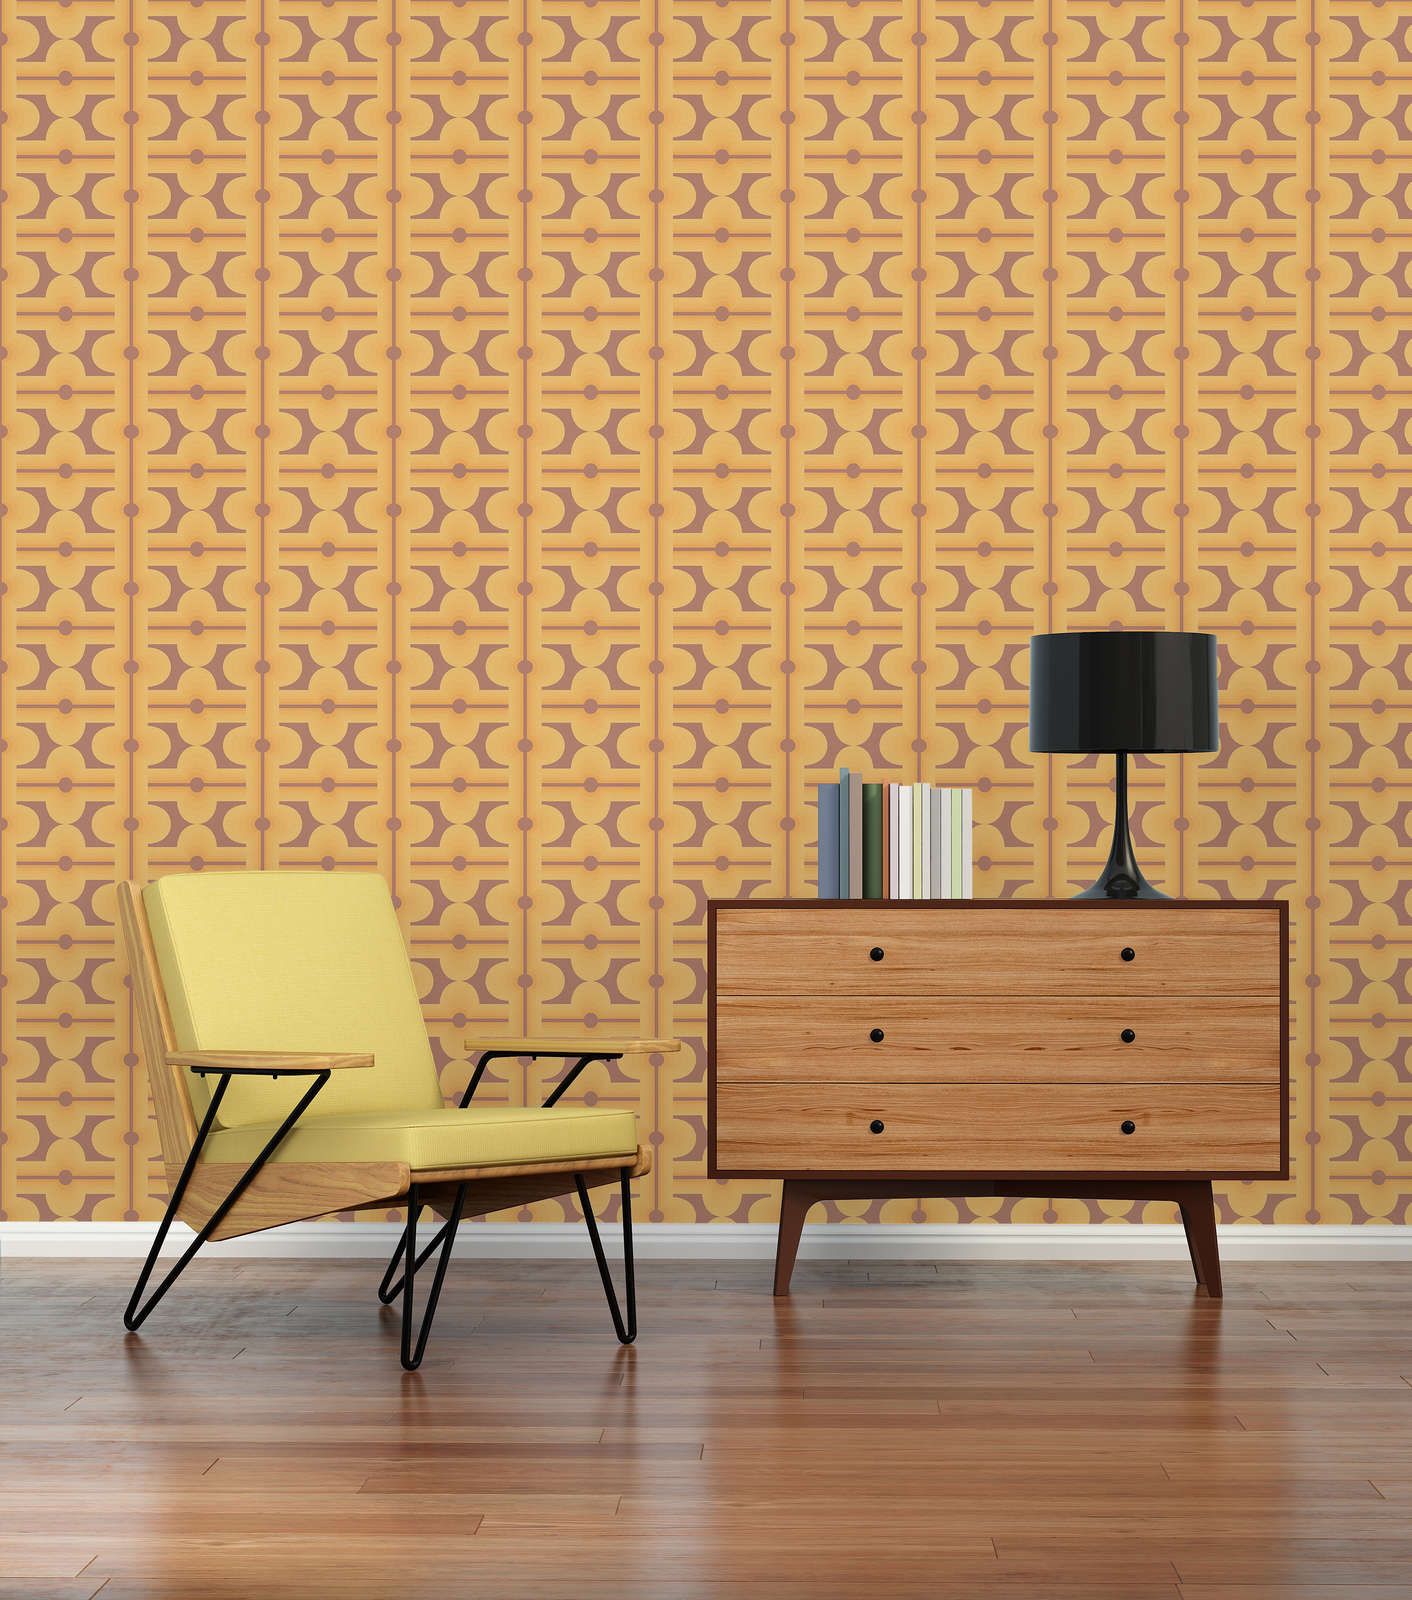             Abstrakte Muster auf Vliestapete der 70er Jahre in warmen Farben – Braun, Gelb, Orange
        